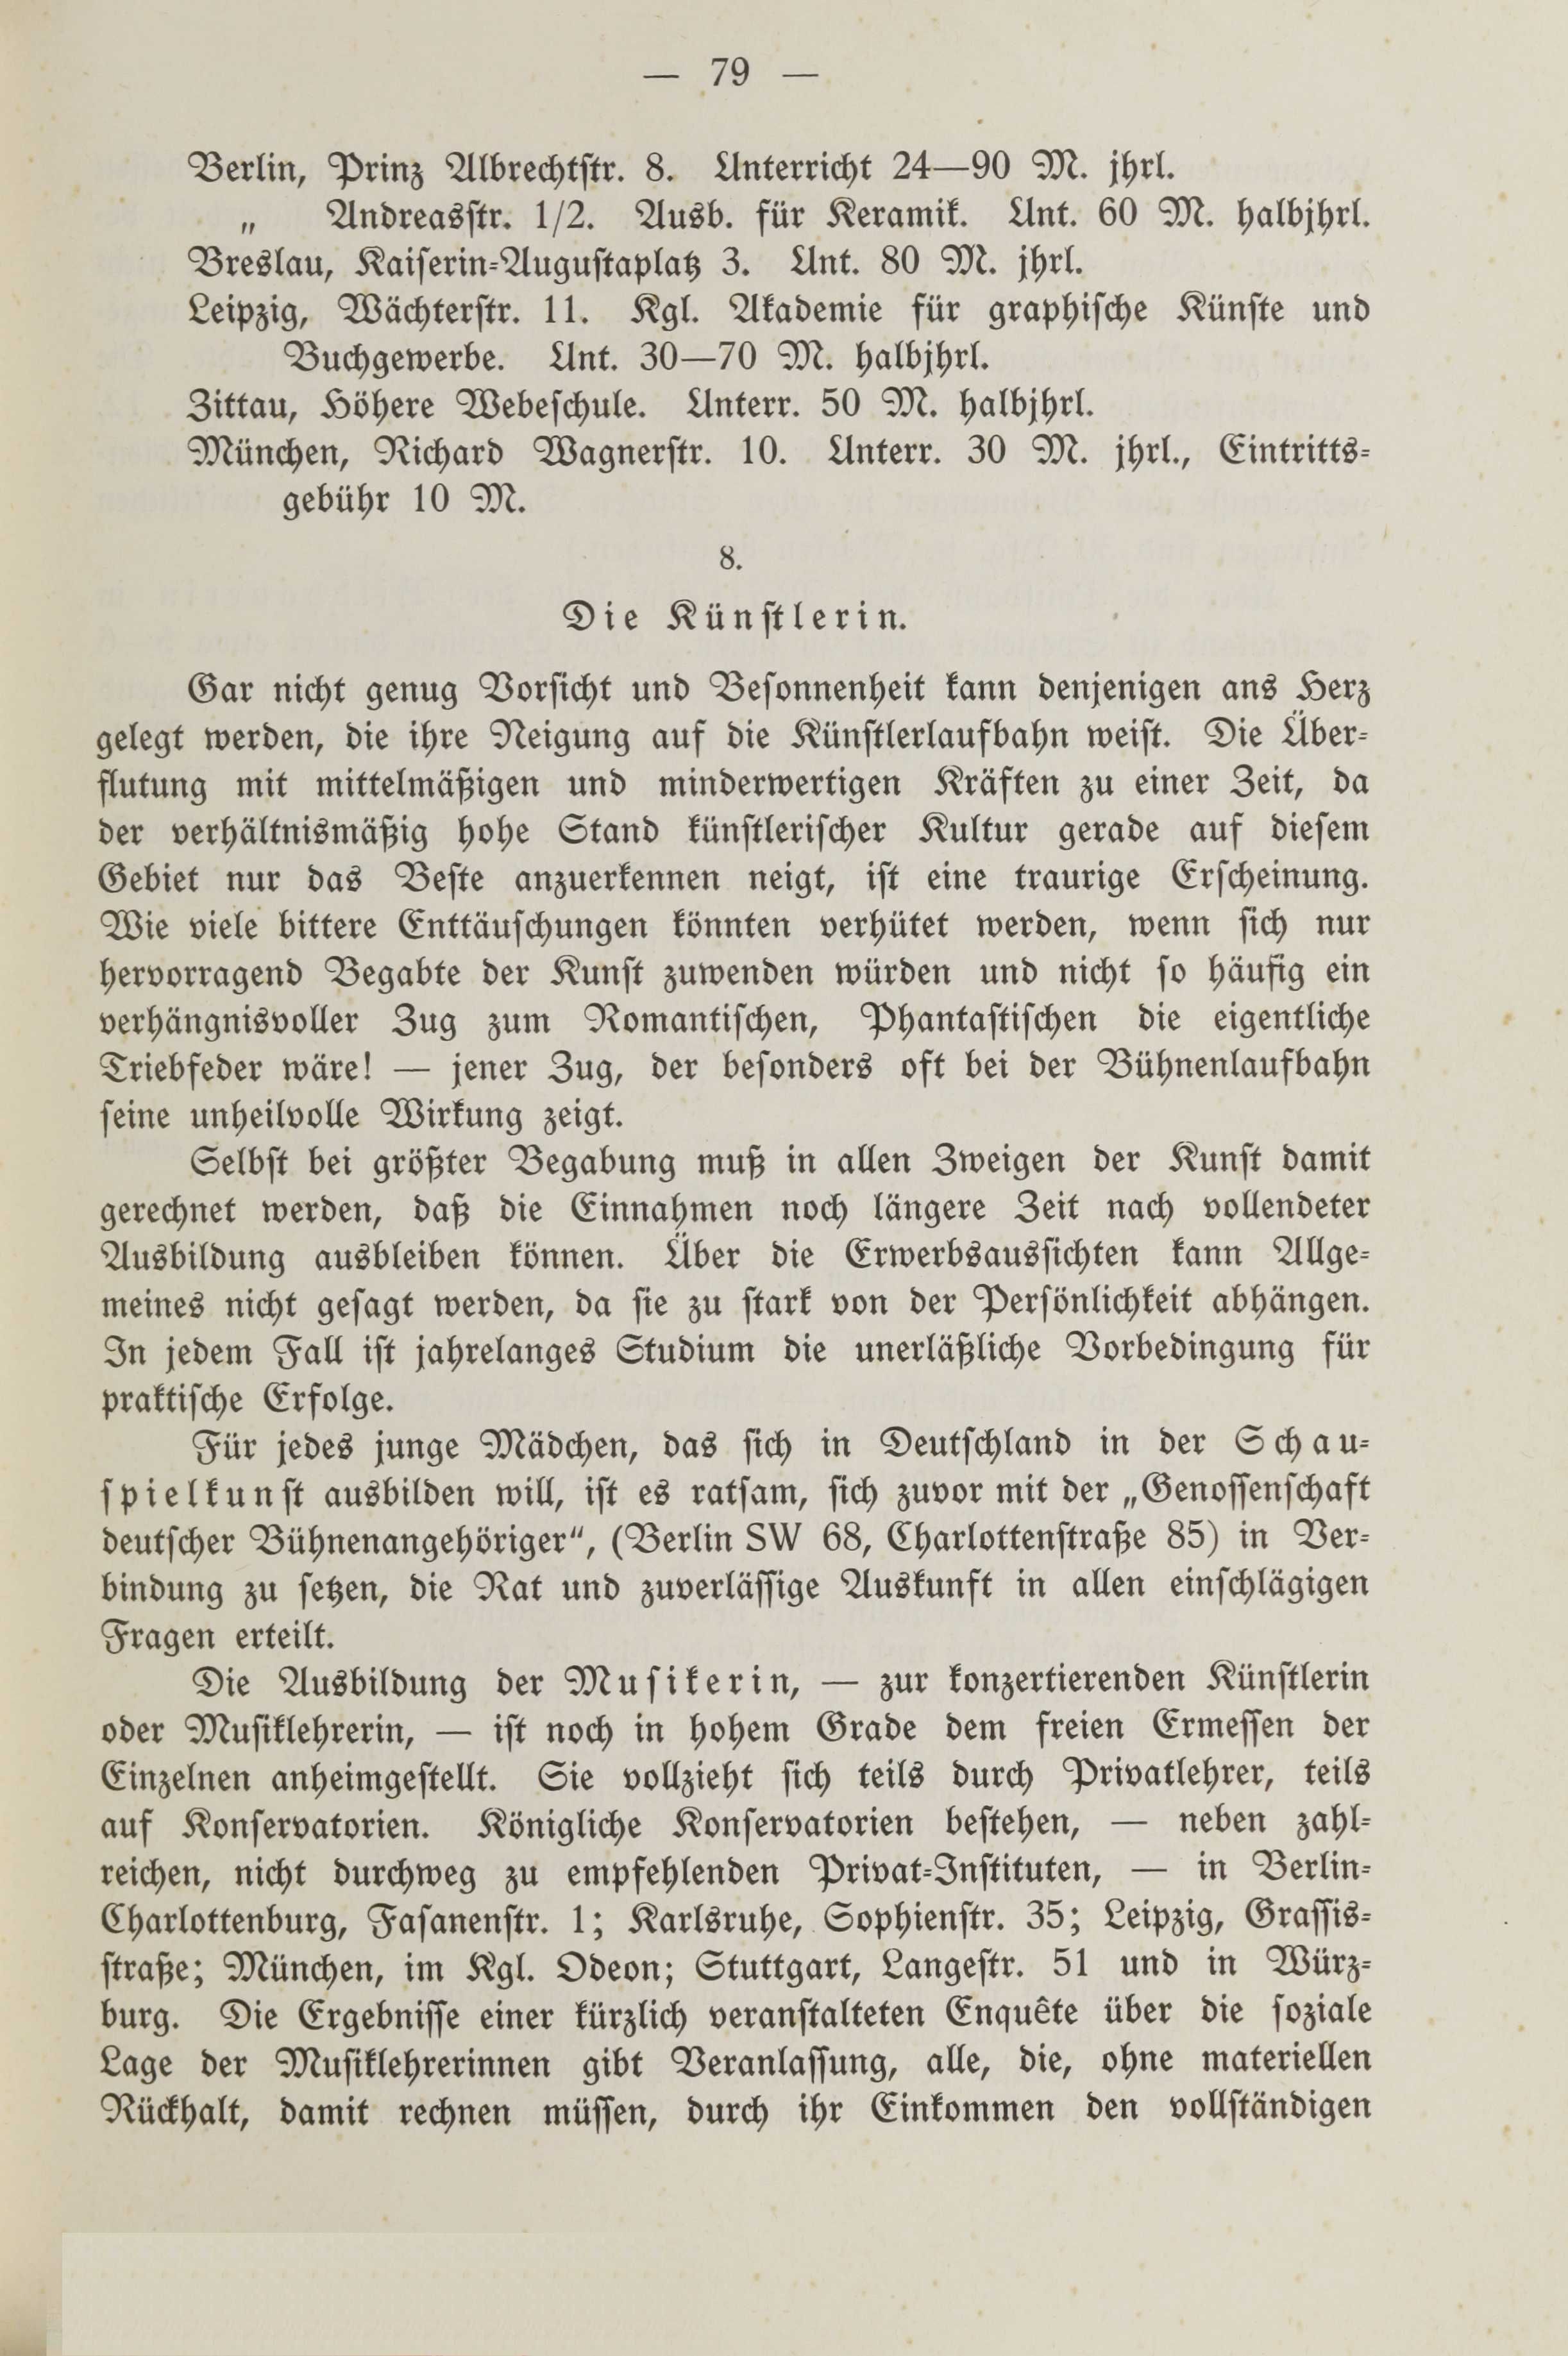 Deutsche Monatsschrift für Russland [2] (1913) | 83. (79) Põhitekst